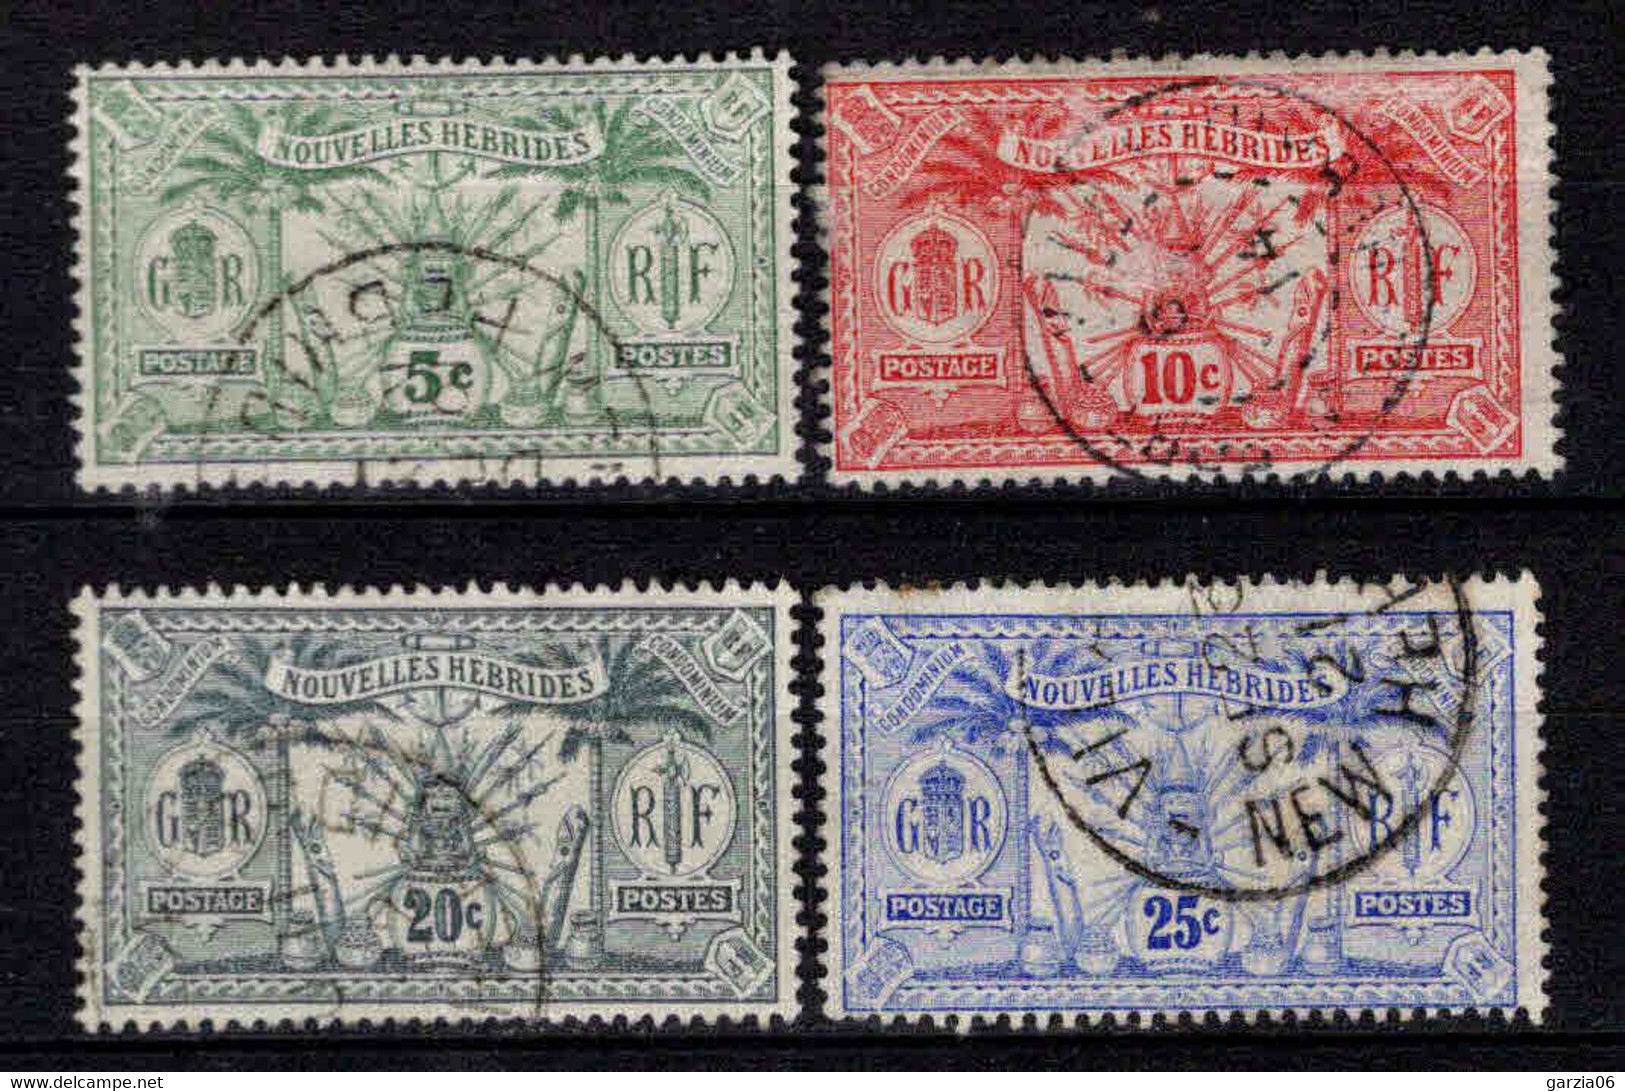 Nouvelles Hébrides  - 1911 - Idole Indigène  - N° 27 à 30 - Oblit - Used - Used Stamps